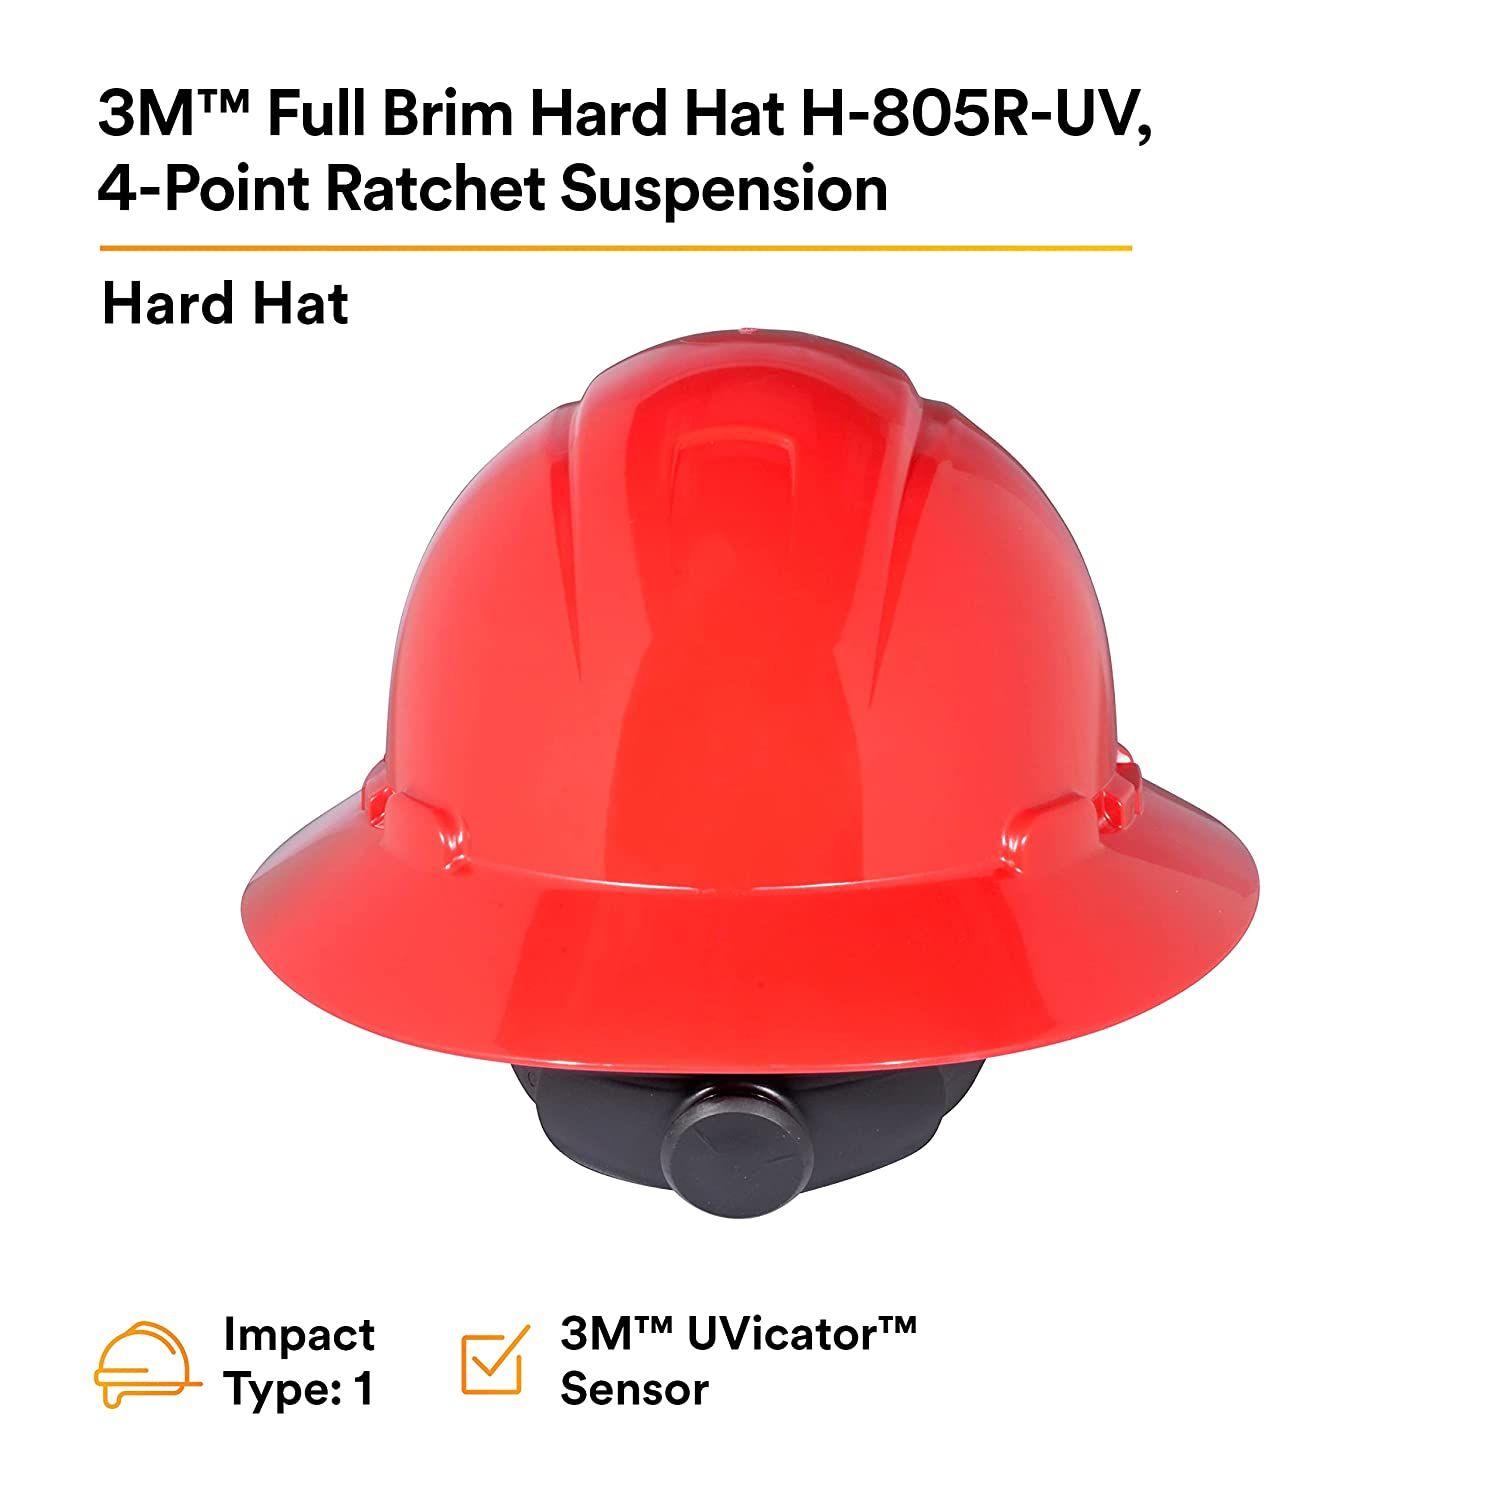 Hard Hat H-805R